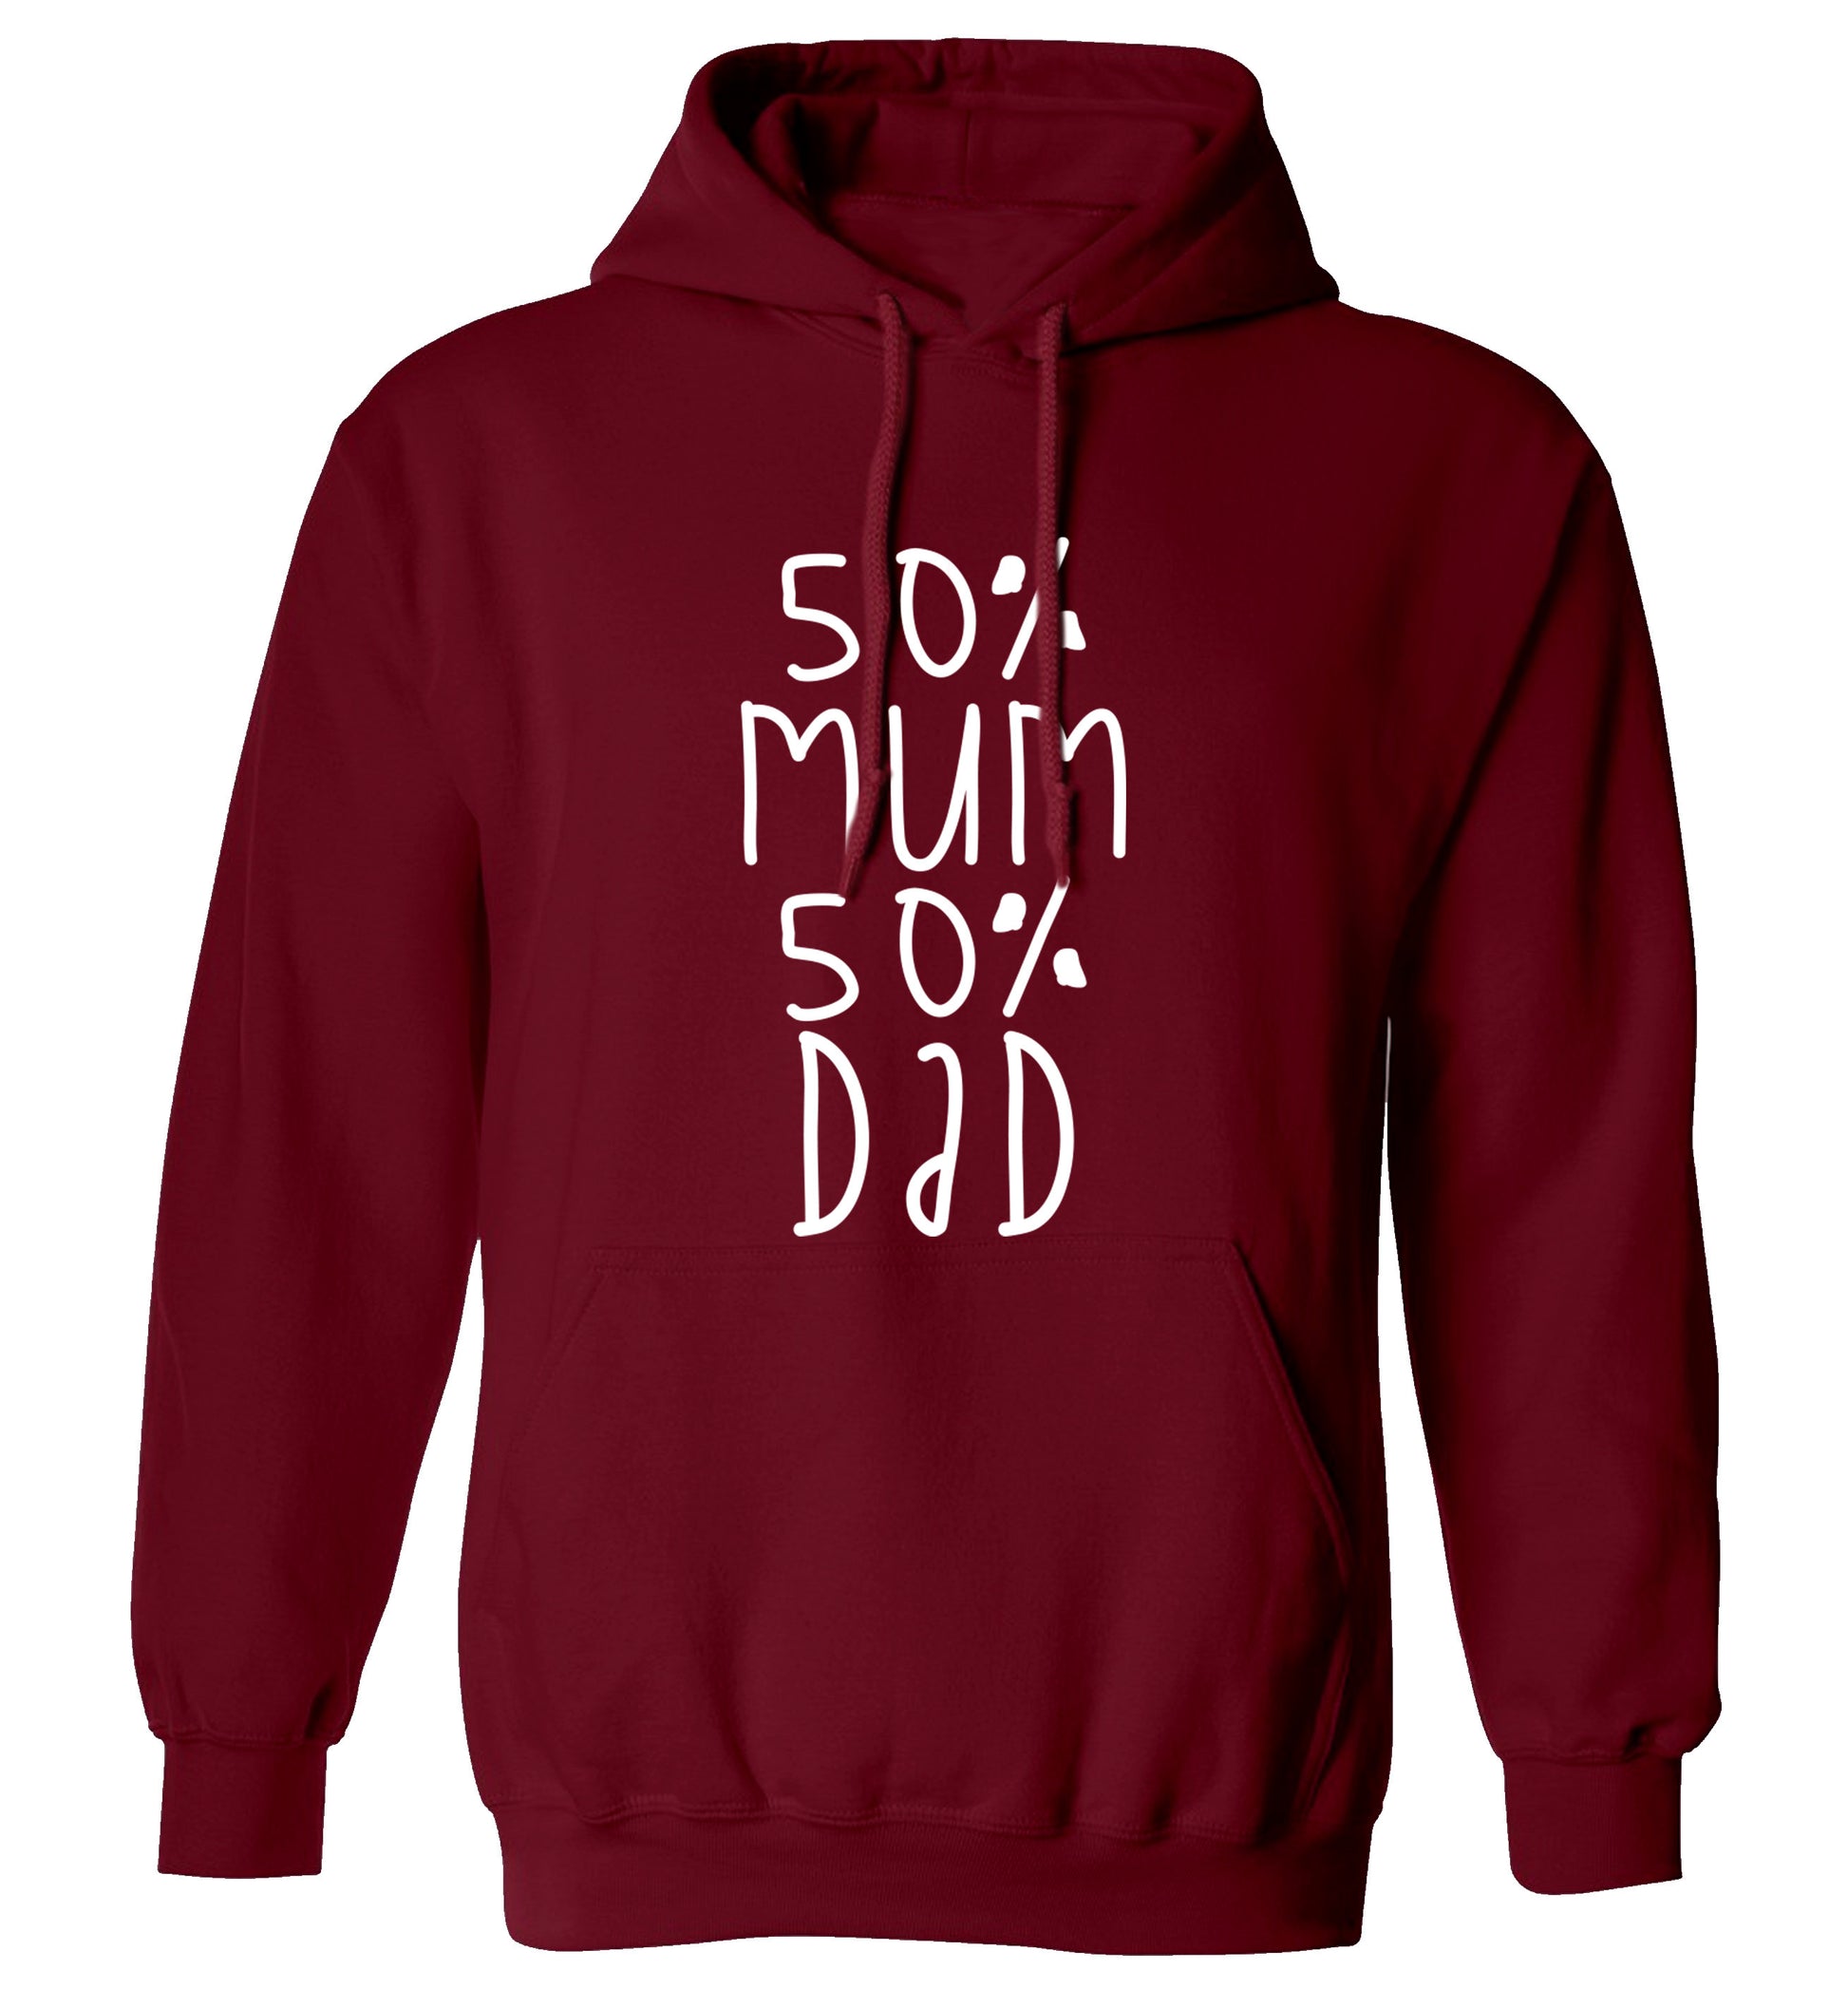 50% mum 50% dad adults unisex maroon hoodie 2XL